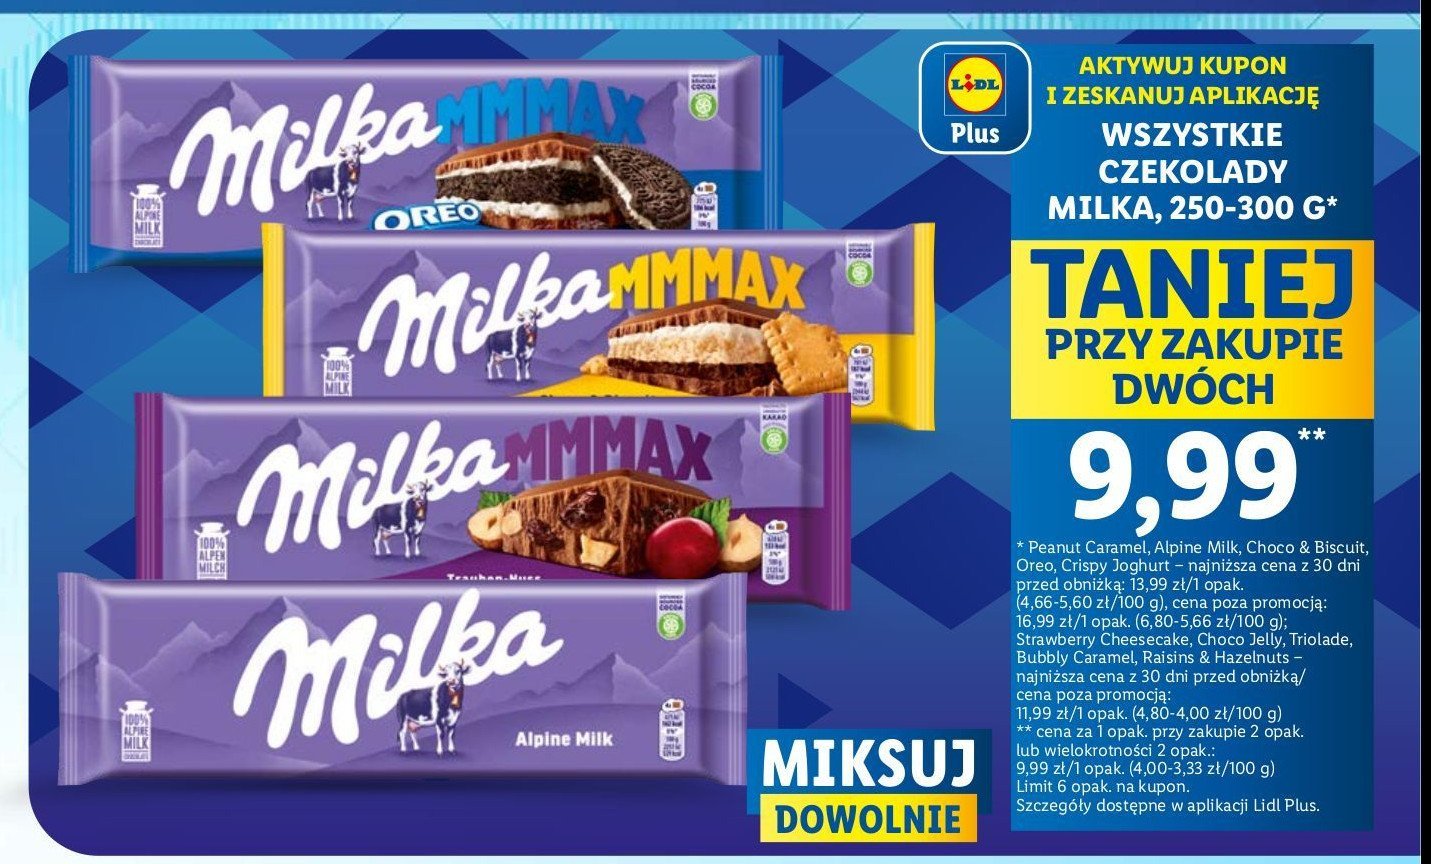 Czekolada triolade Milka mmmax promocja